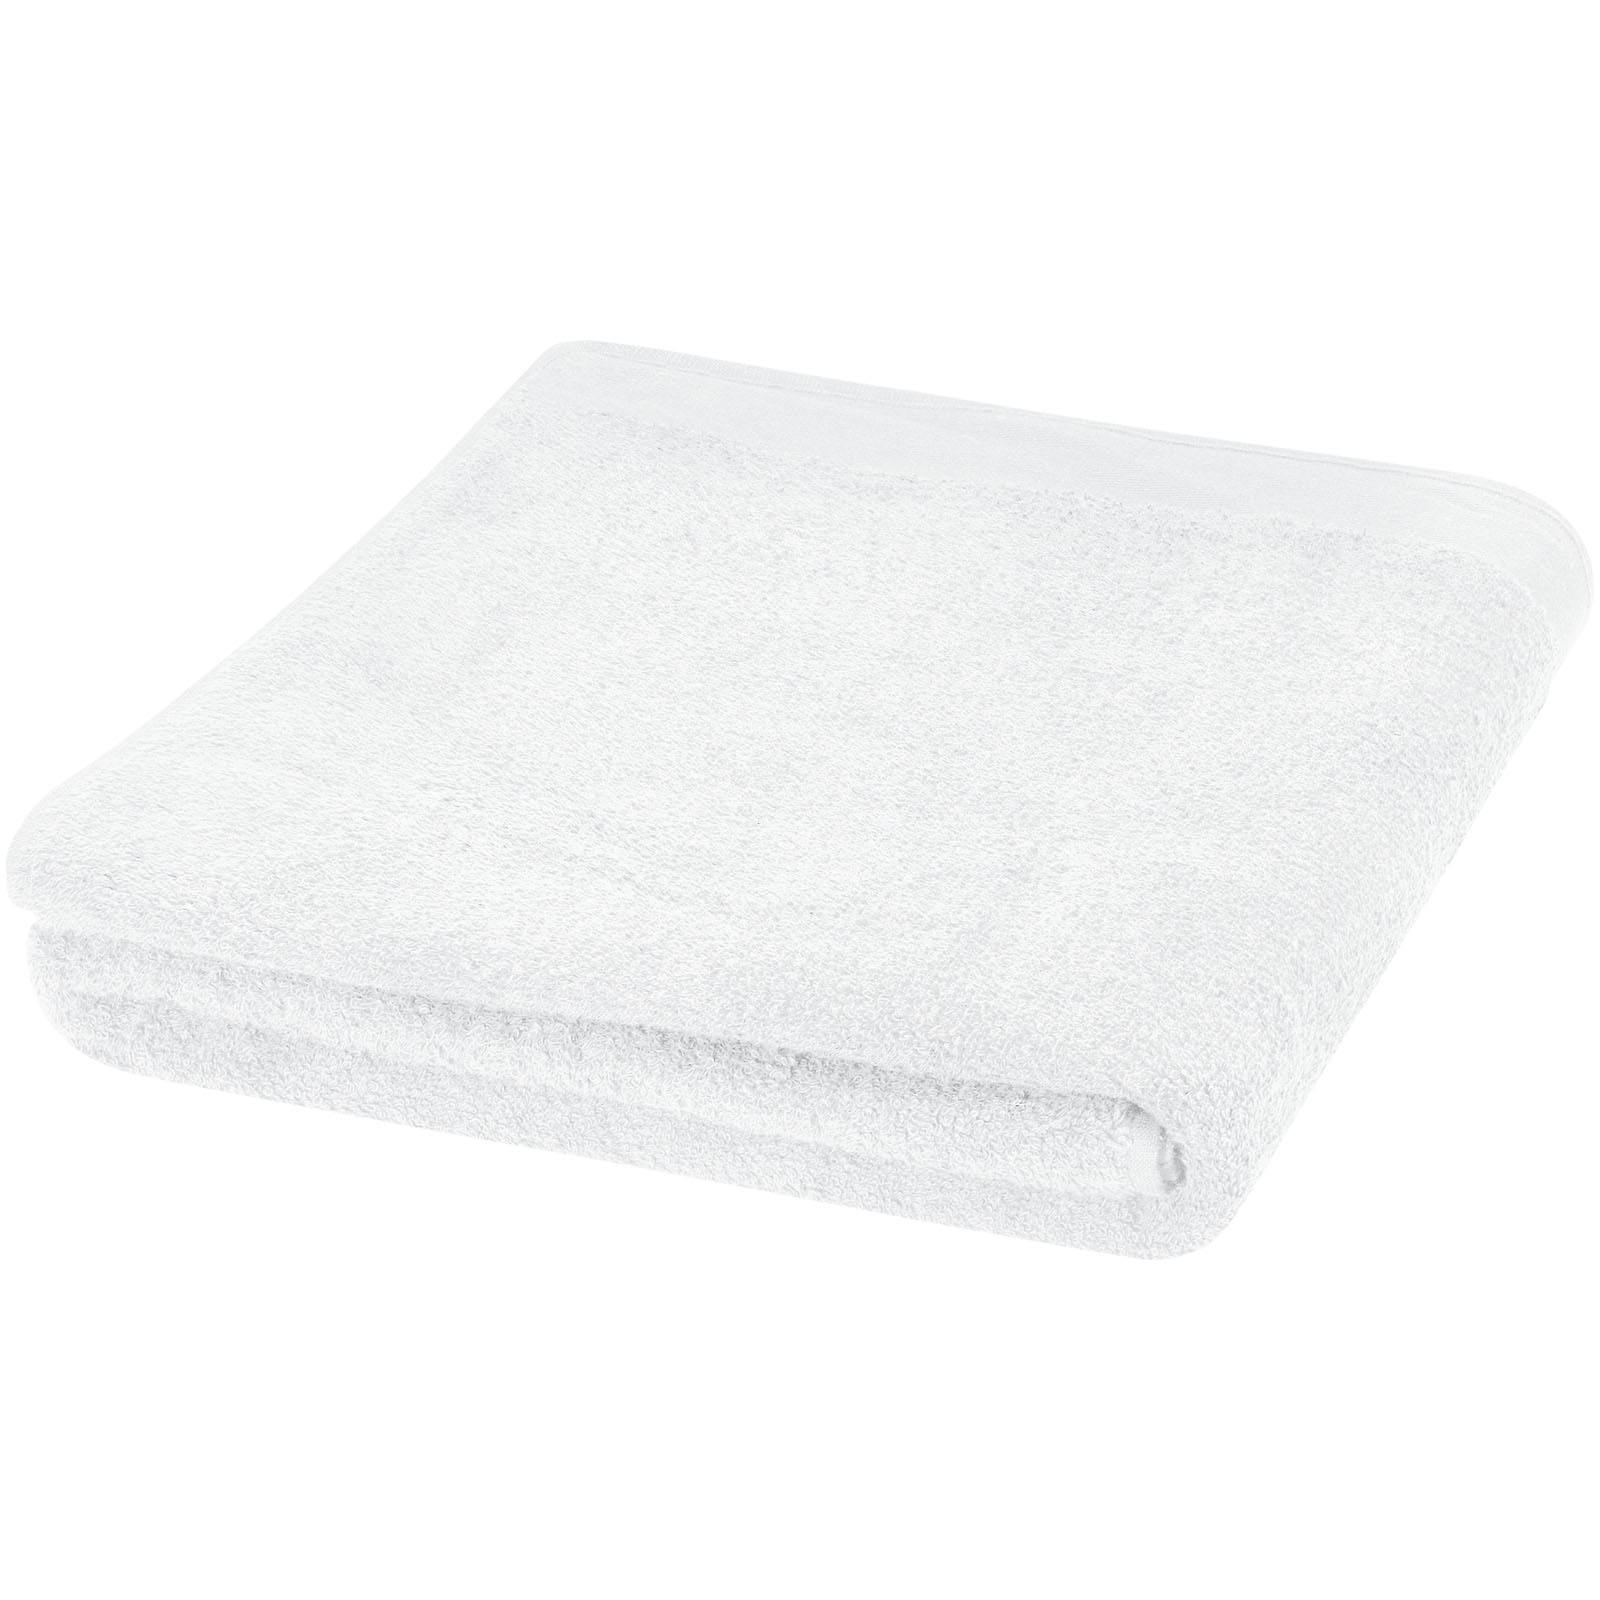 Towels - Riley 550 g/m² cotton towel 100x180 cm